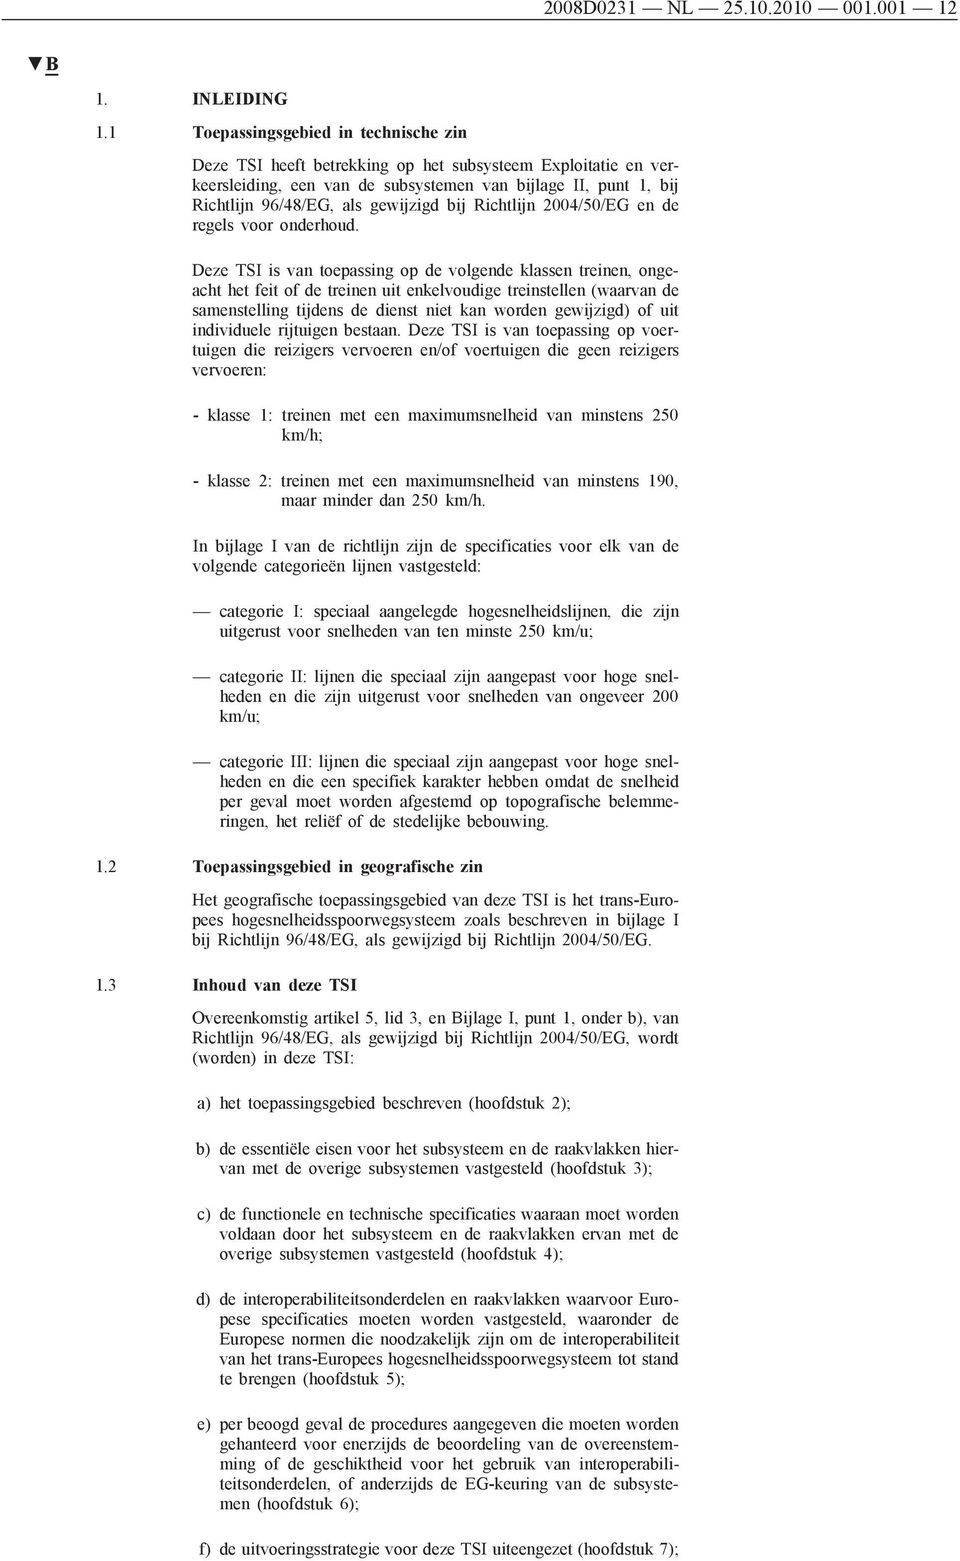 bij Richtlijn 2004/50/EG en de regels voor onderhoud.